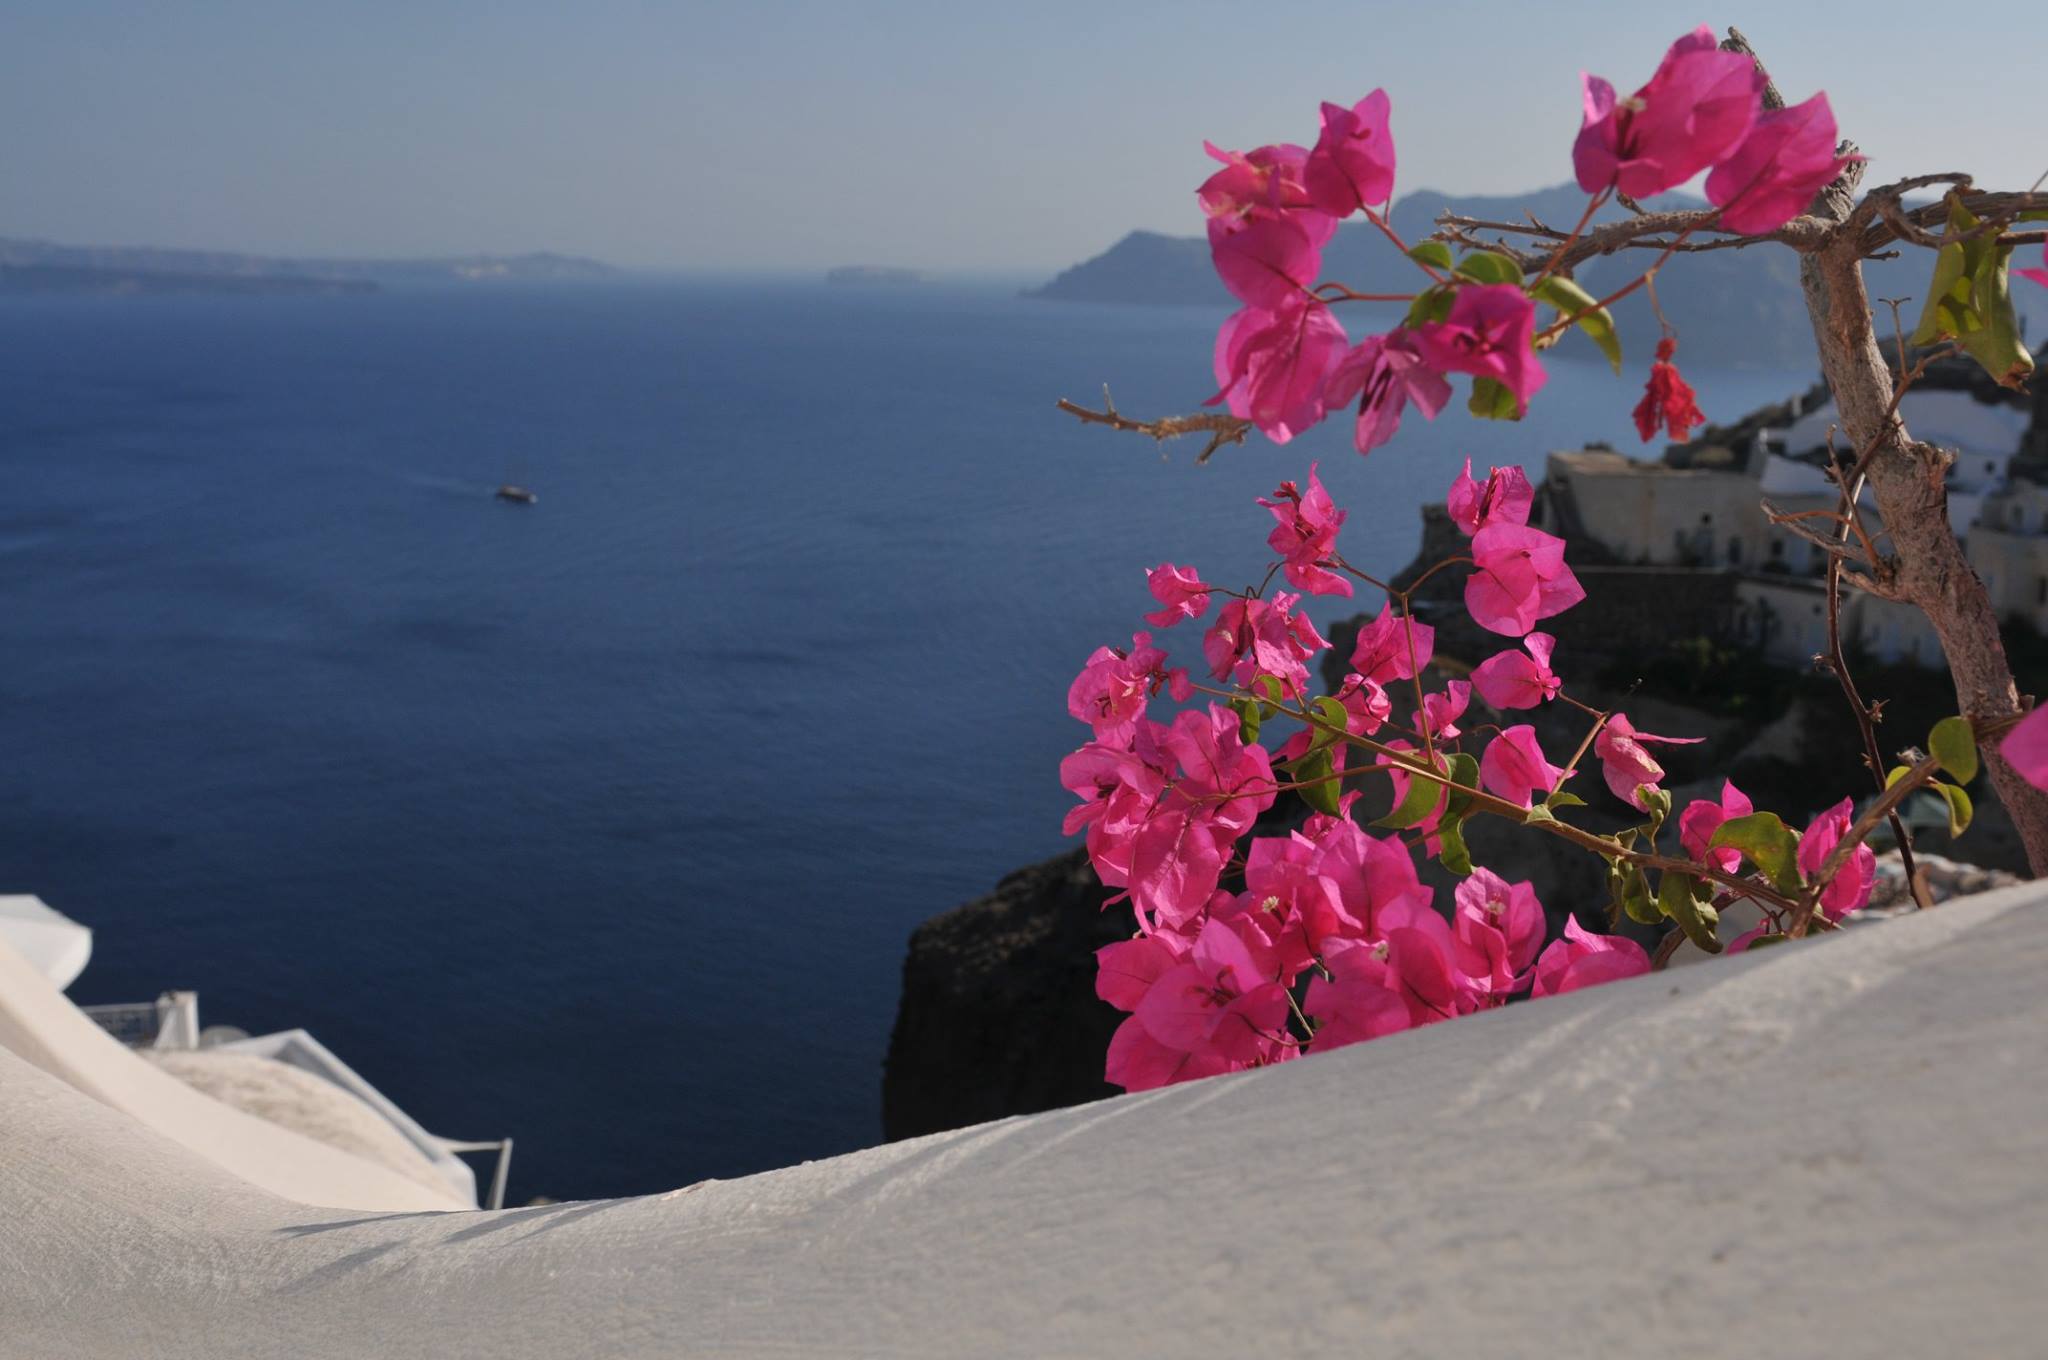 cele mai frumoase insule din grecia santorini